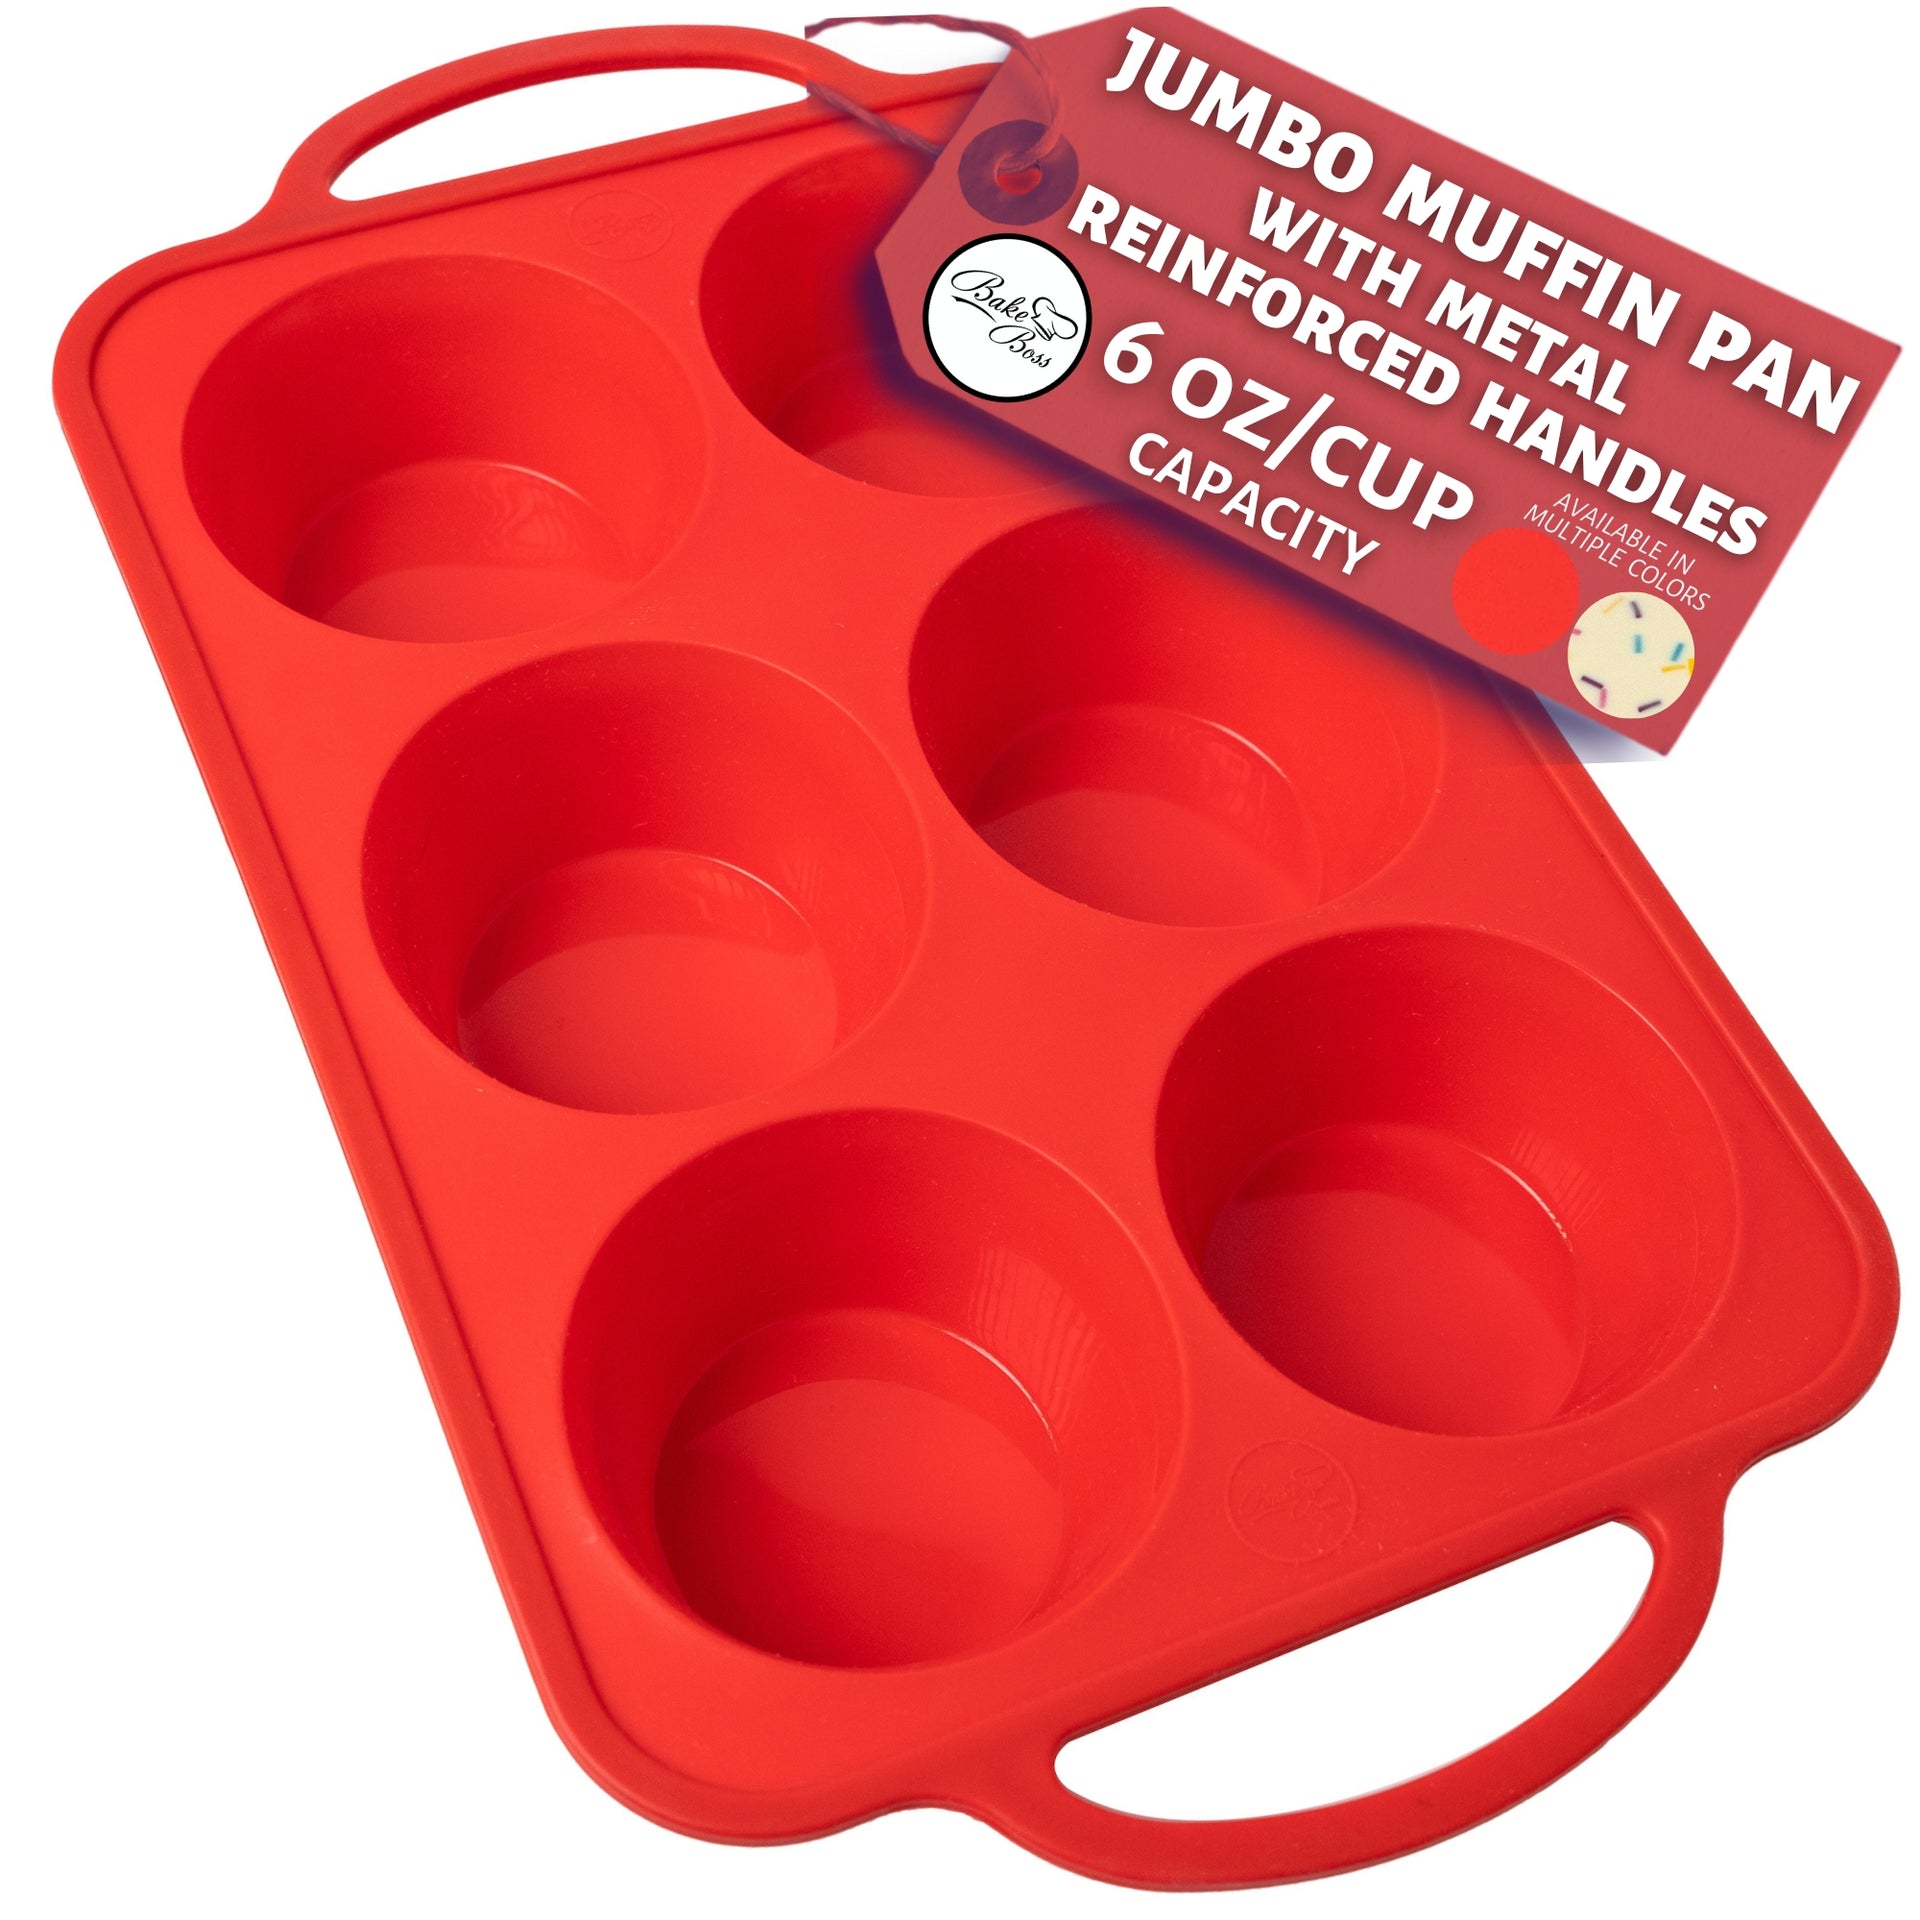 Jumbo Muffin Pan 6 Cup Silicone Texas Muffin Pan, 3.5 Large